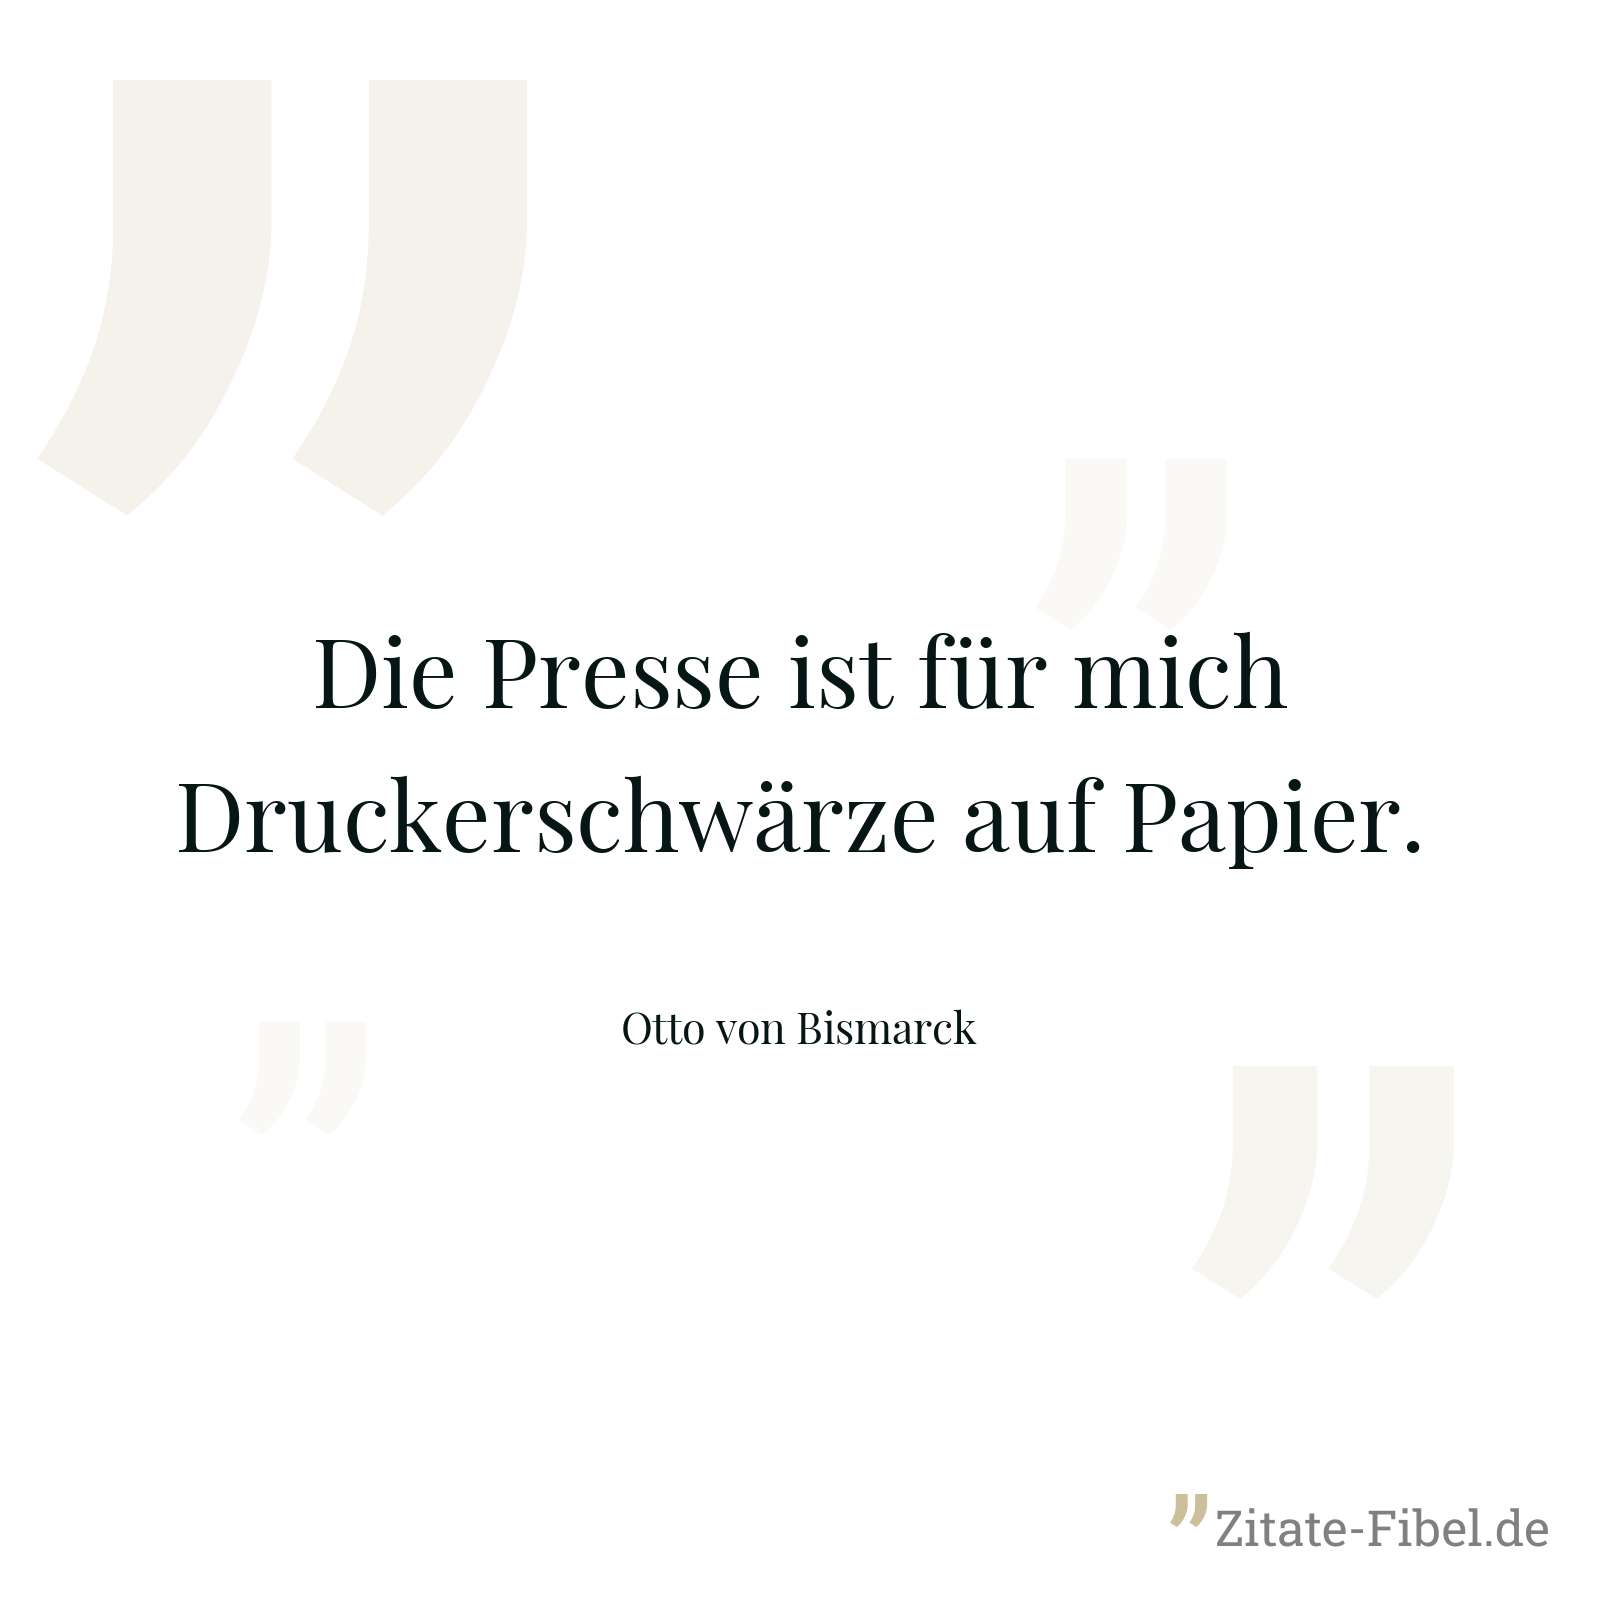 Die Presse ist für mich Druckerschwärze auf Papier. - Otto von Bismarck